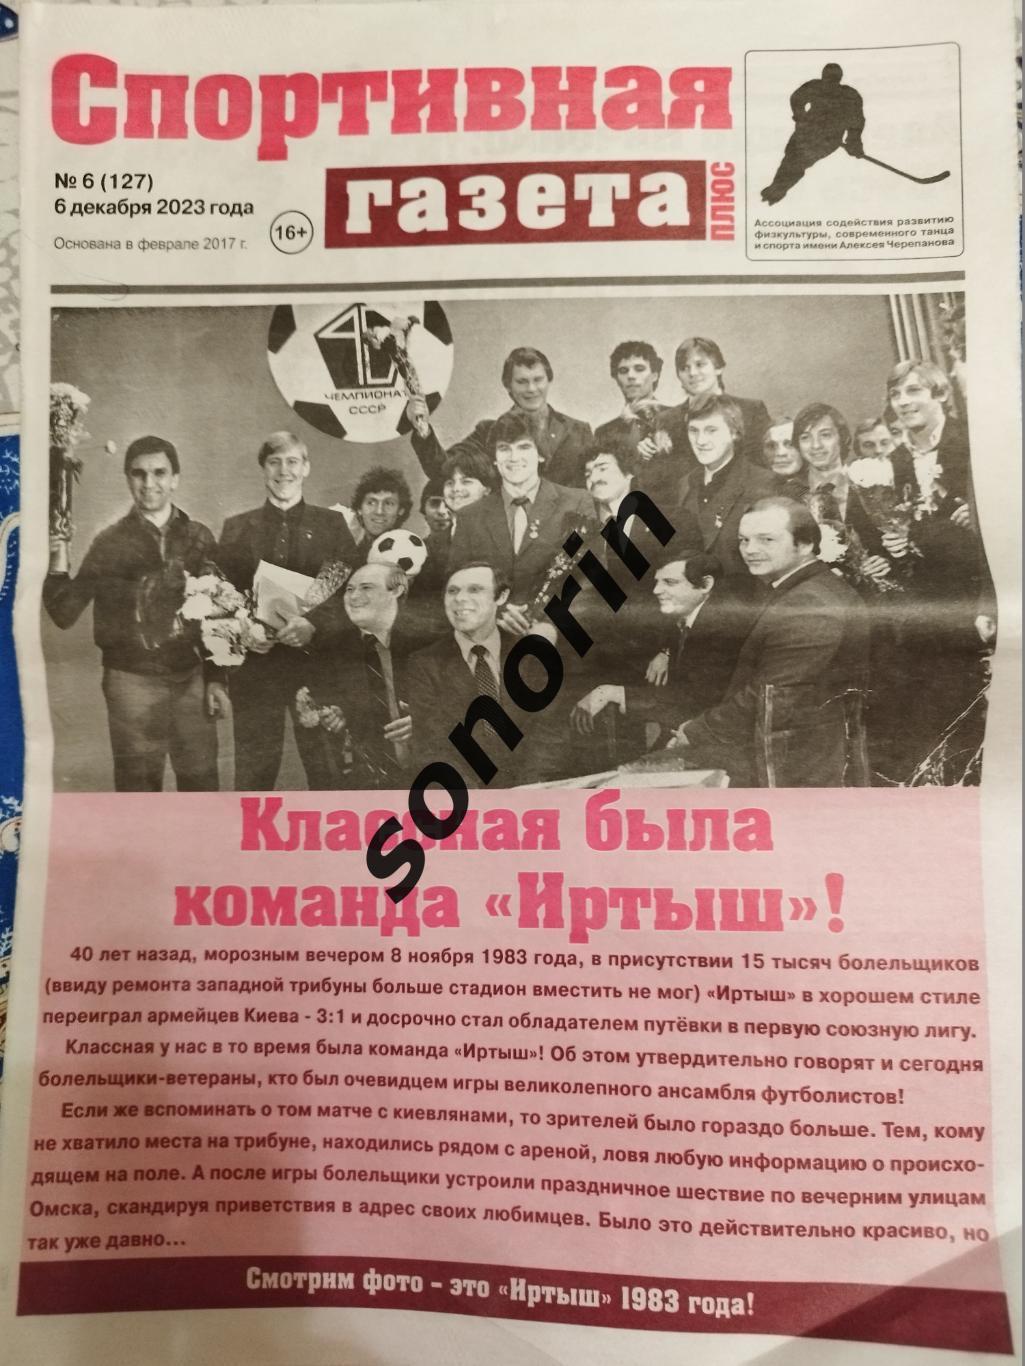 Спортивная газета, Омск, №6, 6 декабря 2023